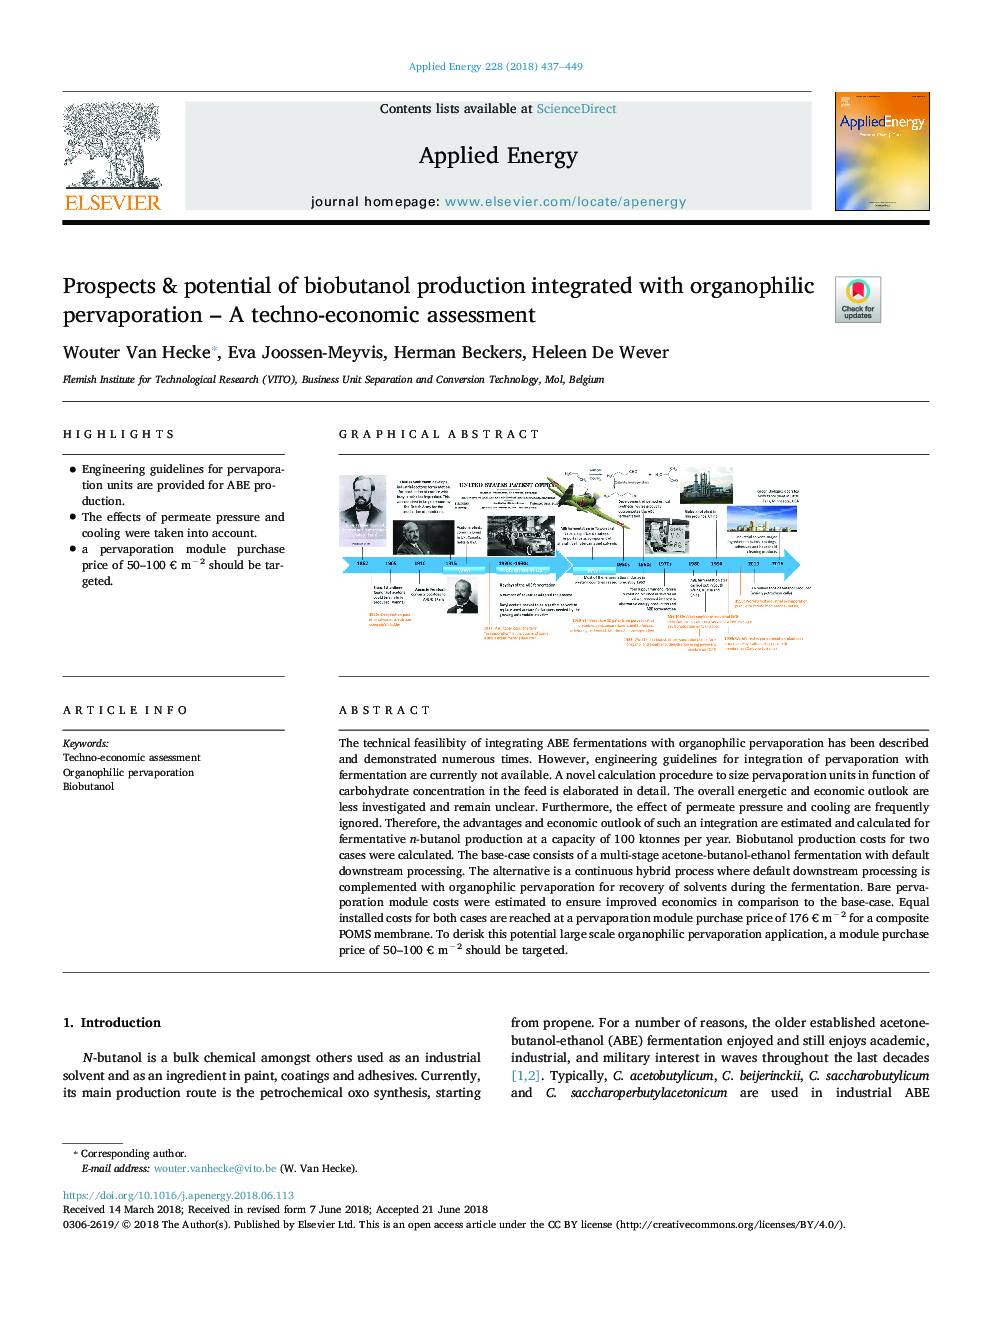 چشم انداز و پتانسیل تولید بیوبانتولول یکپارچه با پیشرفت ارگانوفیل - ارزیابی فنی و اقتصادی 